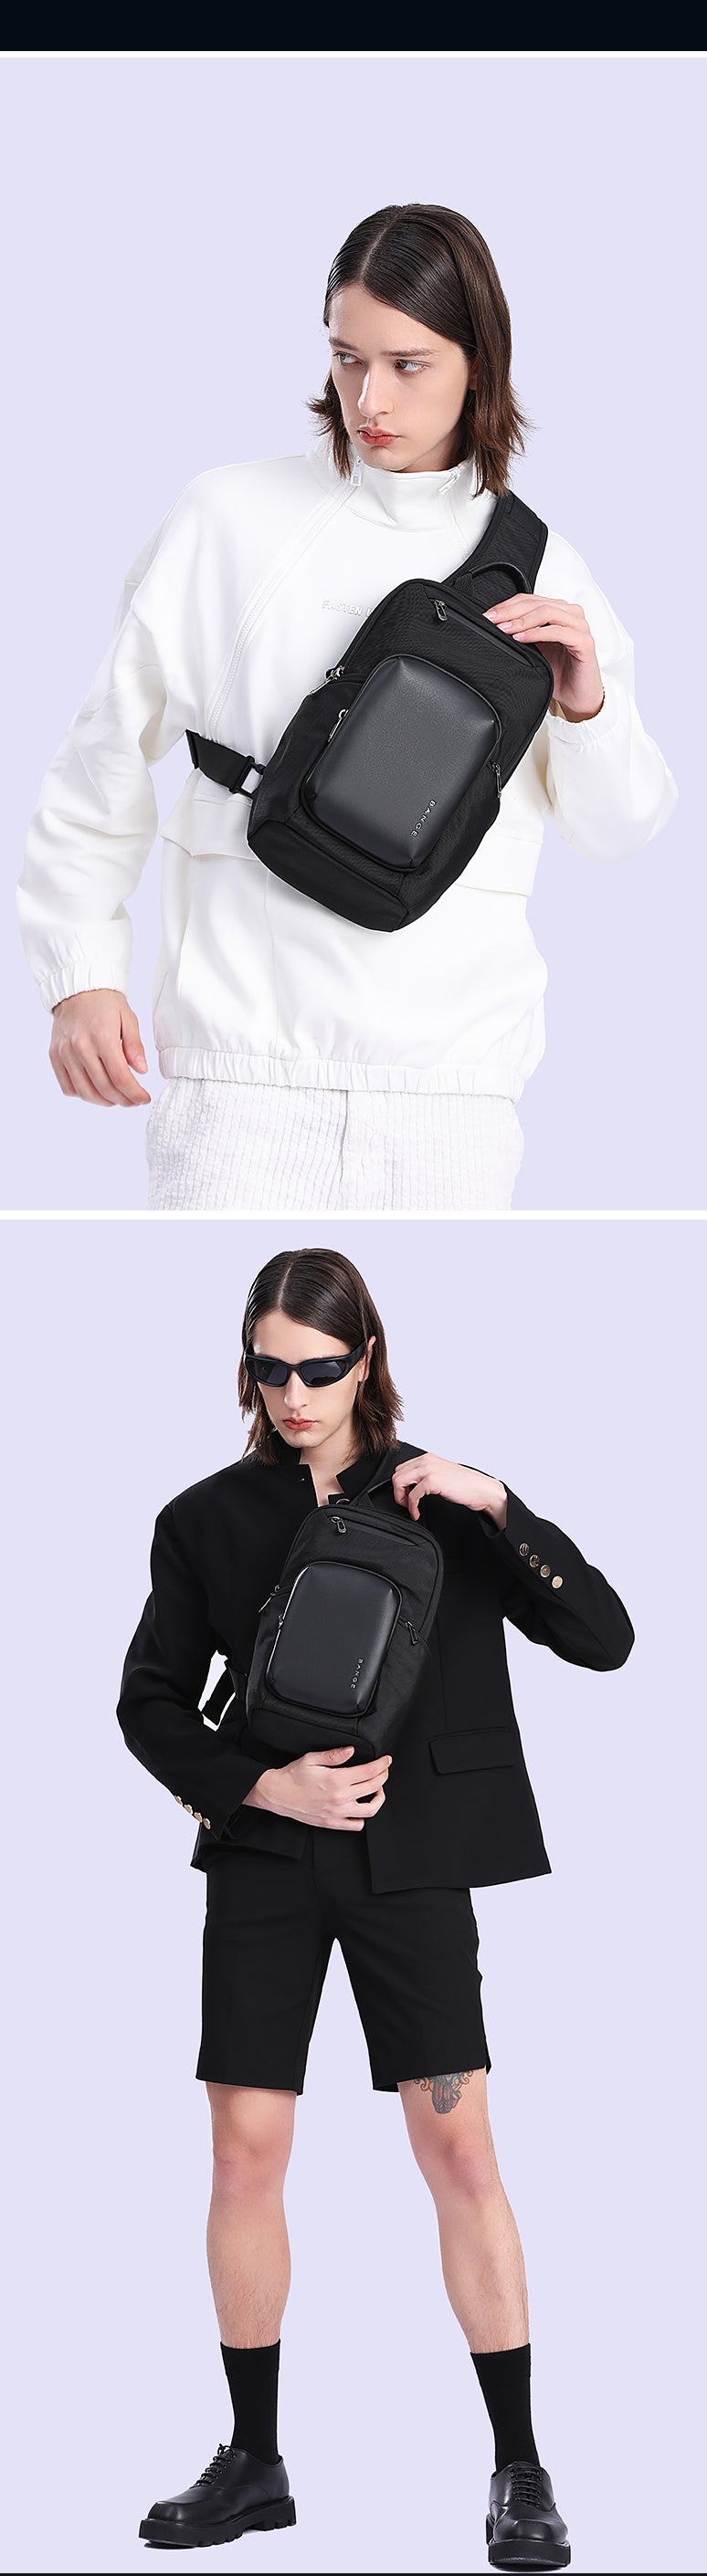 Bange Raven Sling Bag Shoulder Bag Crossbody Bag Men’s Bag Multi Compartment Water-Resistant Fit 11inch Ipad